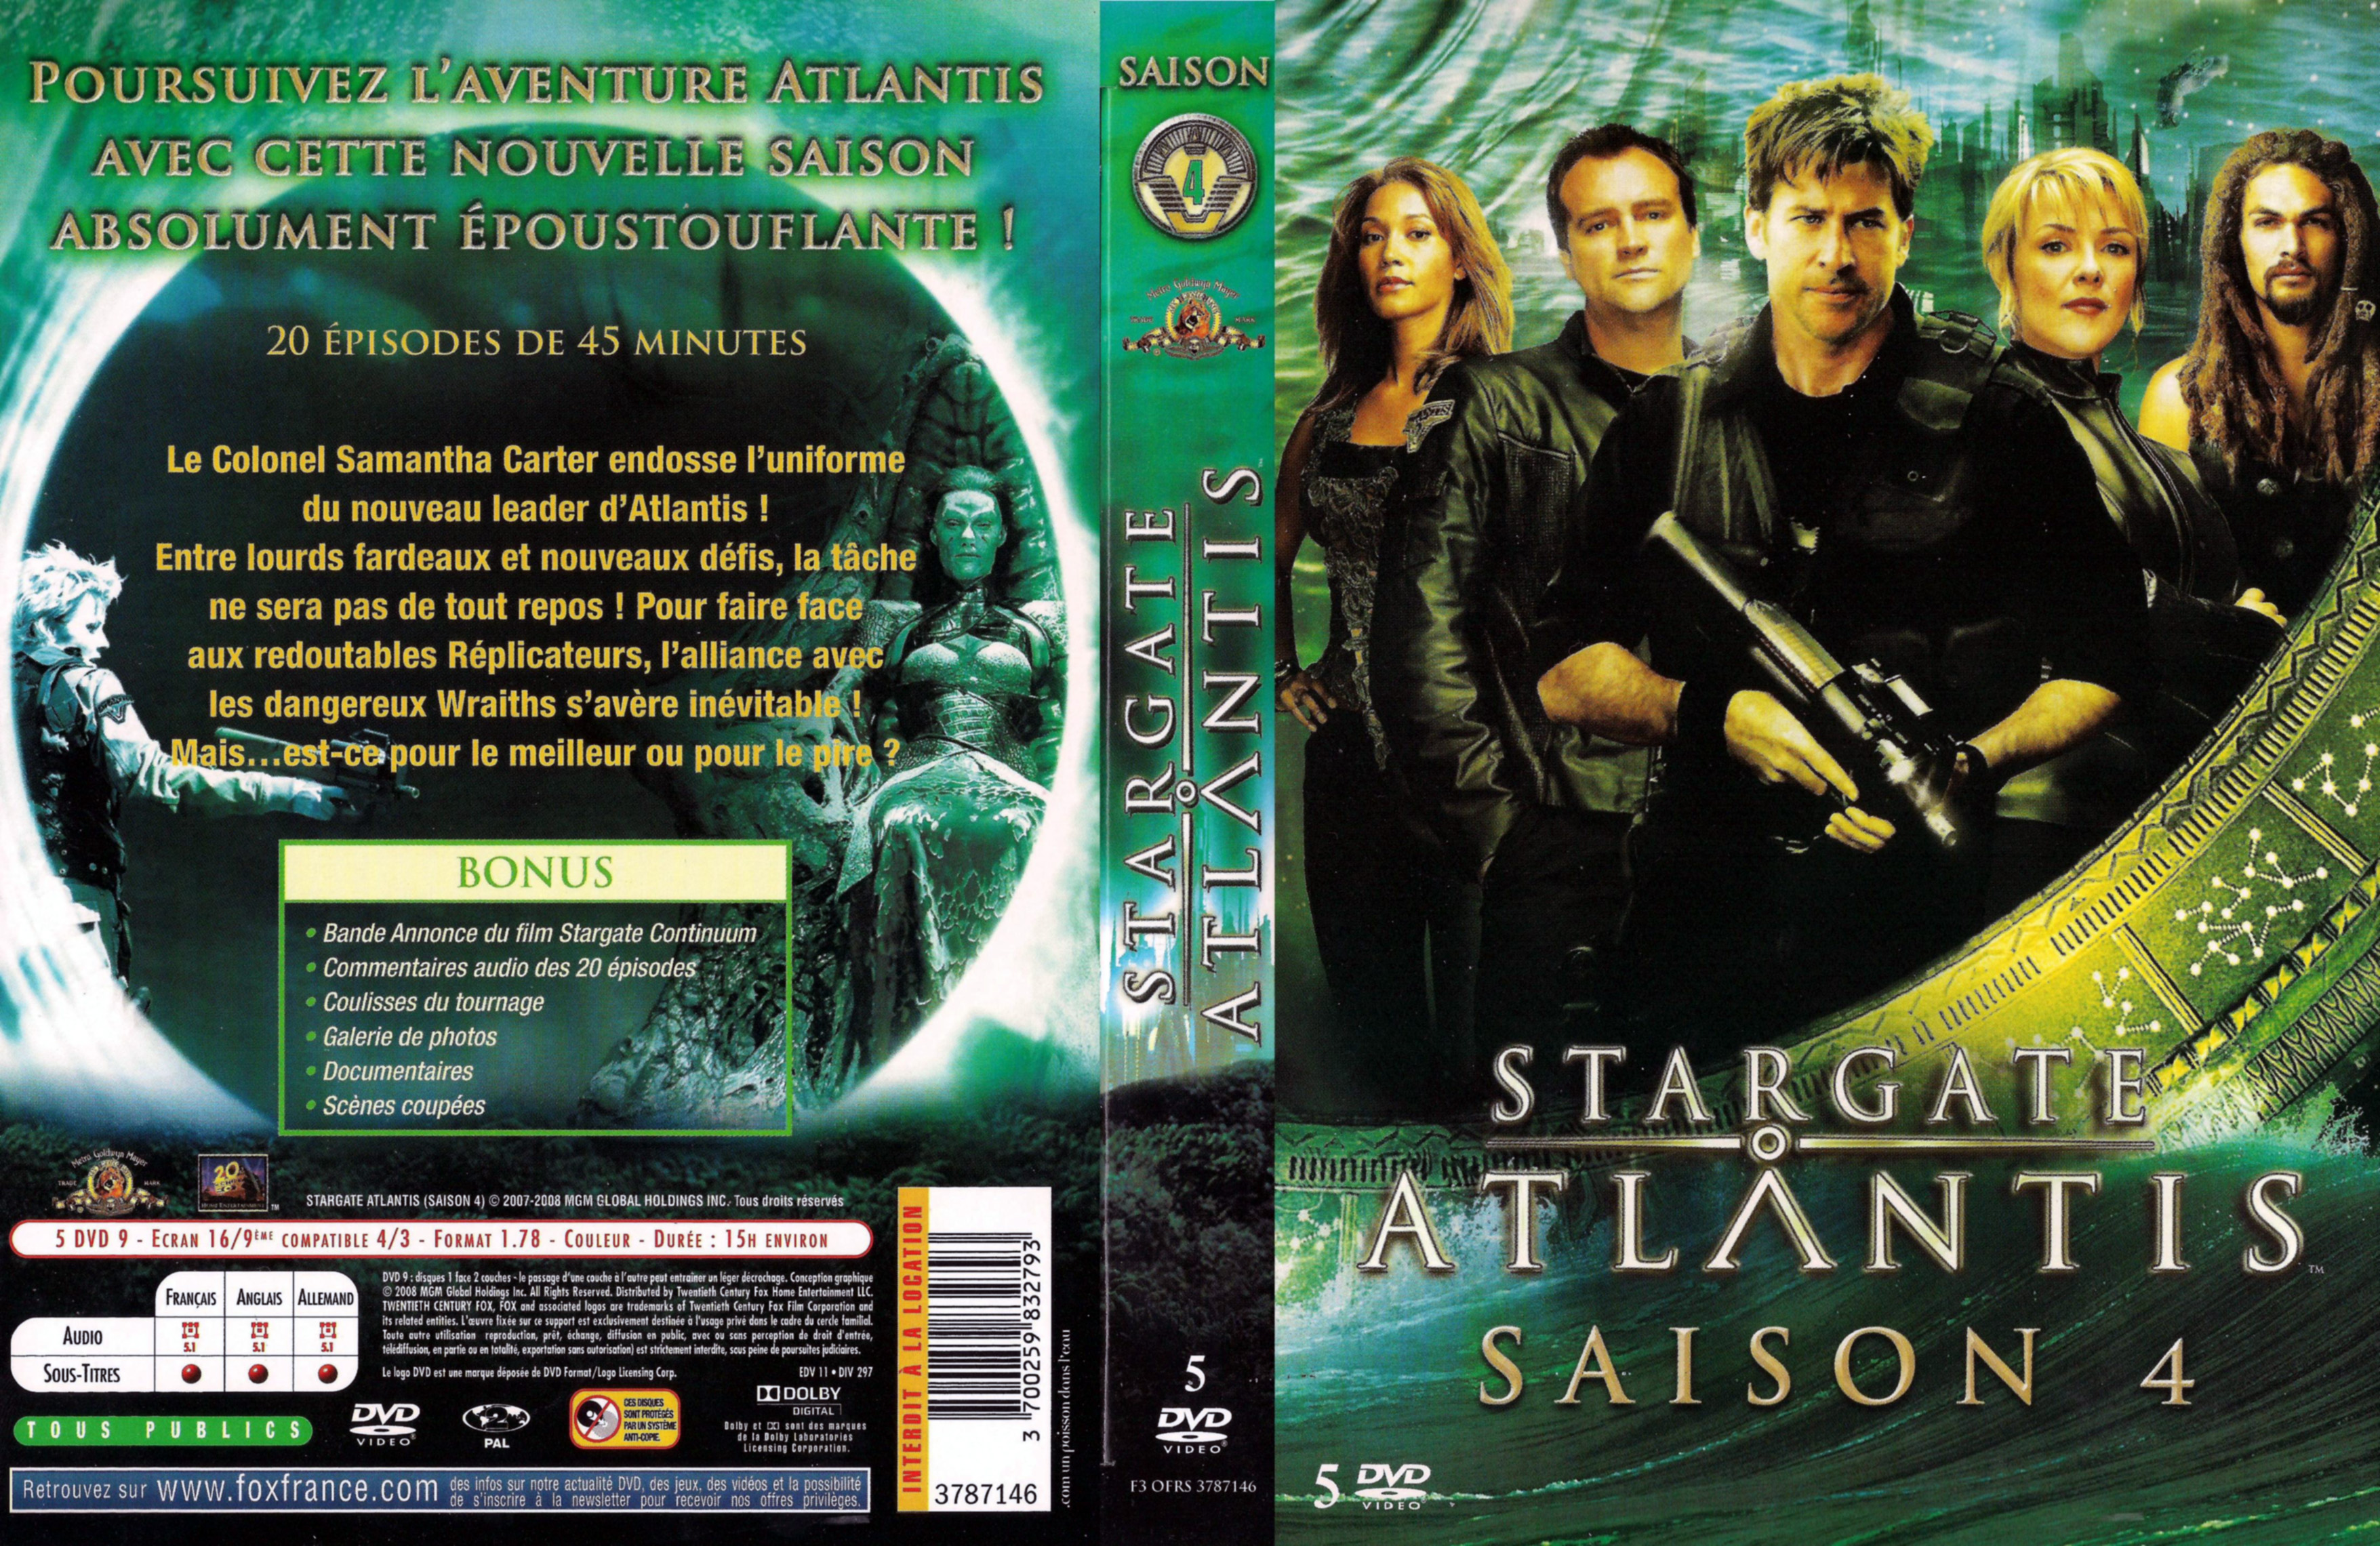 Jaquette DVD Stargate atlantis saison 4 COFFRET